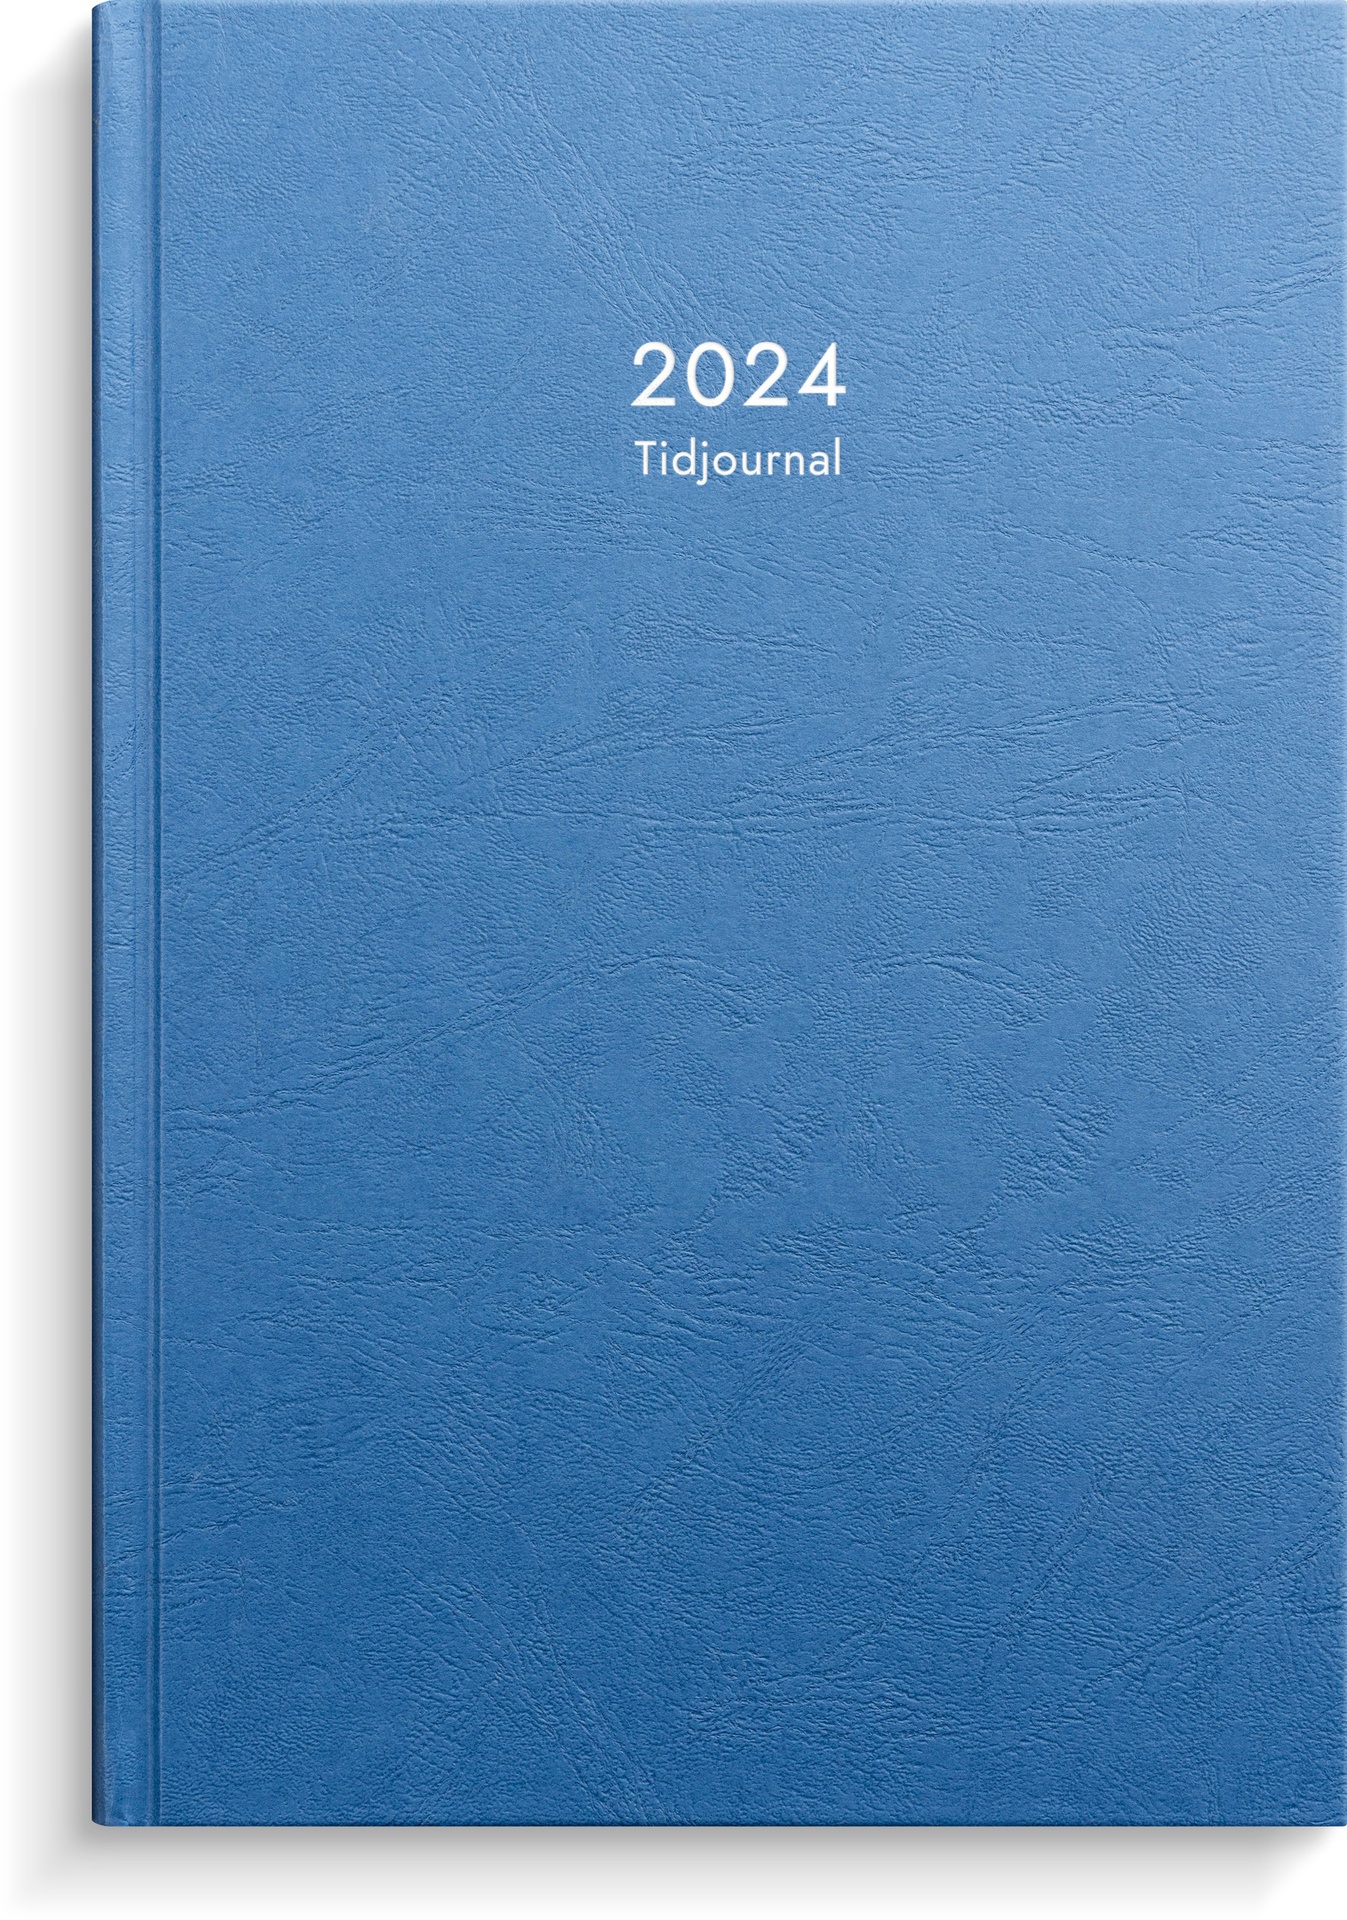 [61100024] Kalender 2024 Tidjournal blå k